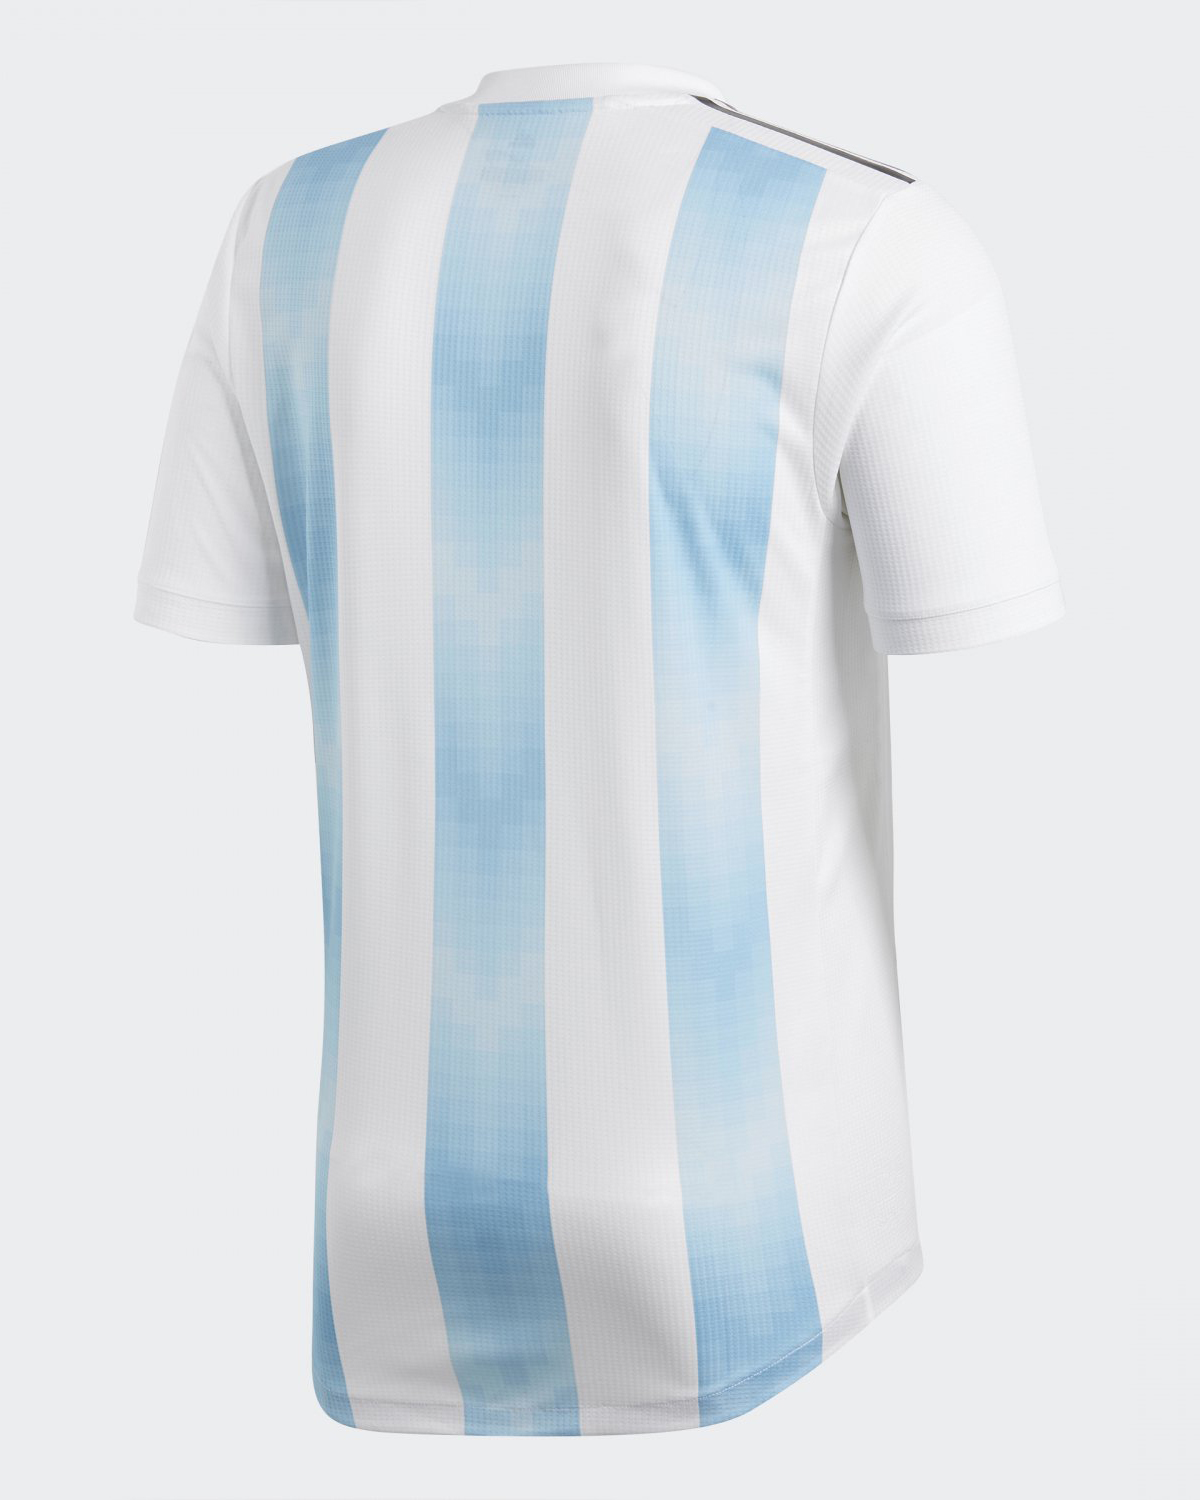 Camiseta adidas de Argentina Mundial 2018